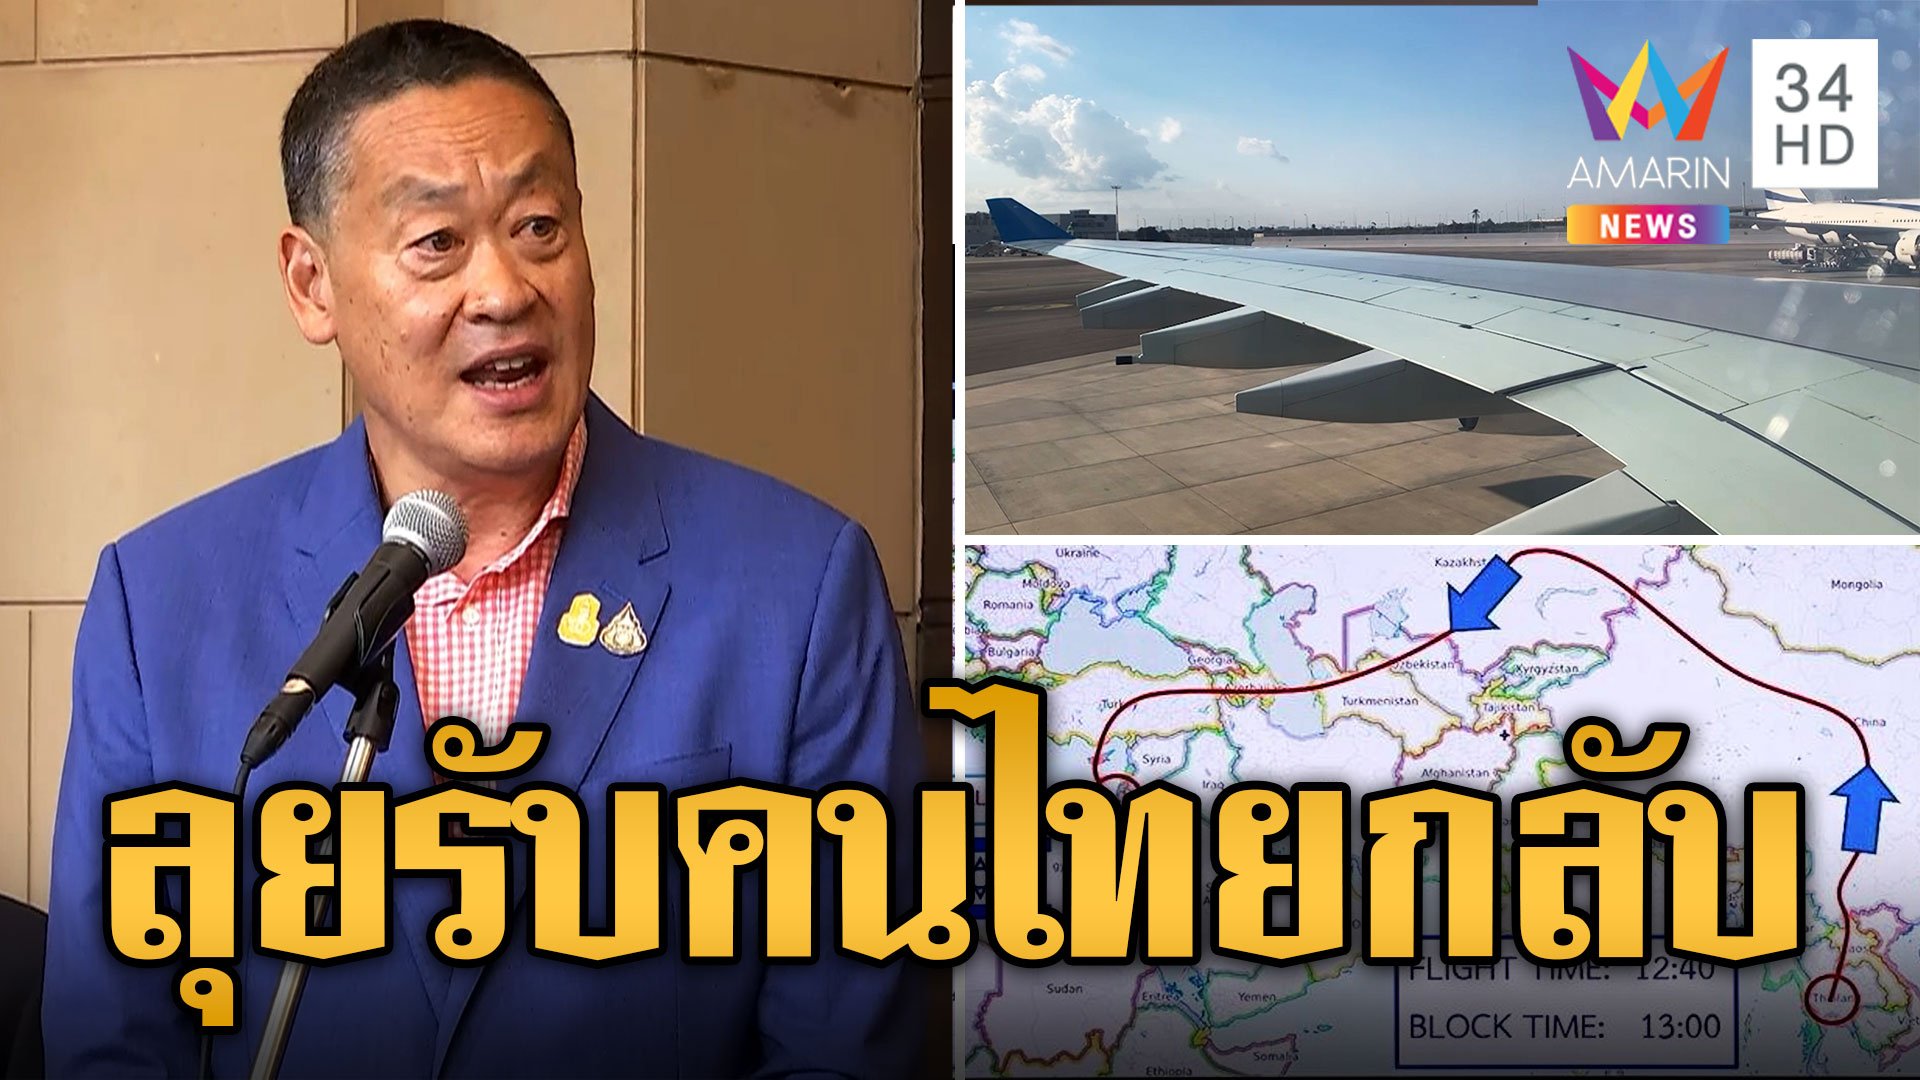 แอร์บัส A340 เที่ยวแรกรับแรงงานไทย 137 คนกลับไทย บินอ้อมใช้เวลา 10 กว่าชั่วโมง | ข่าวอรุณอมรินทร์ | 16 ต.ค. 66 | AMARIN TVHD34